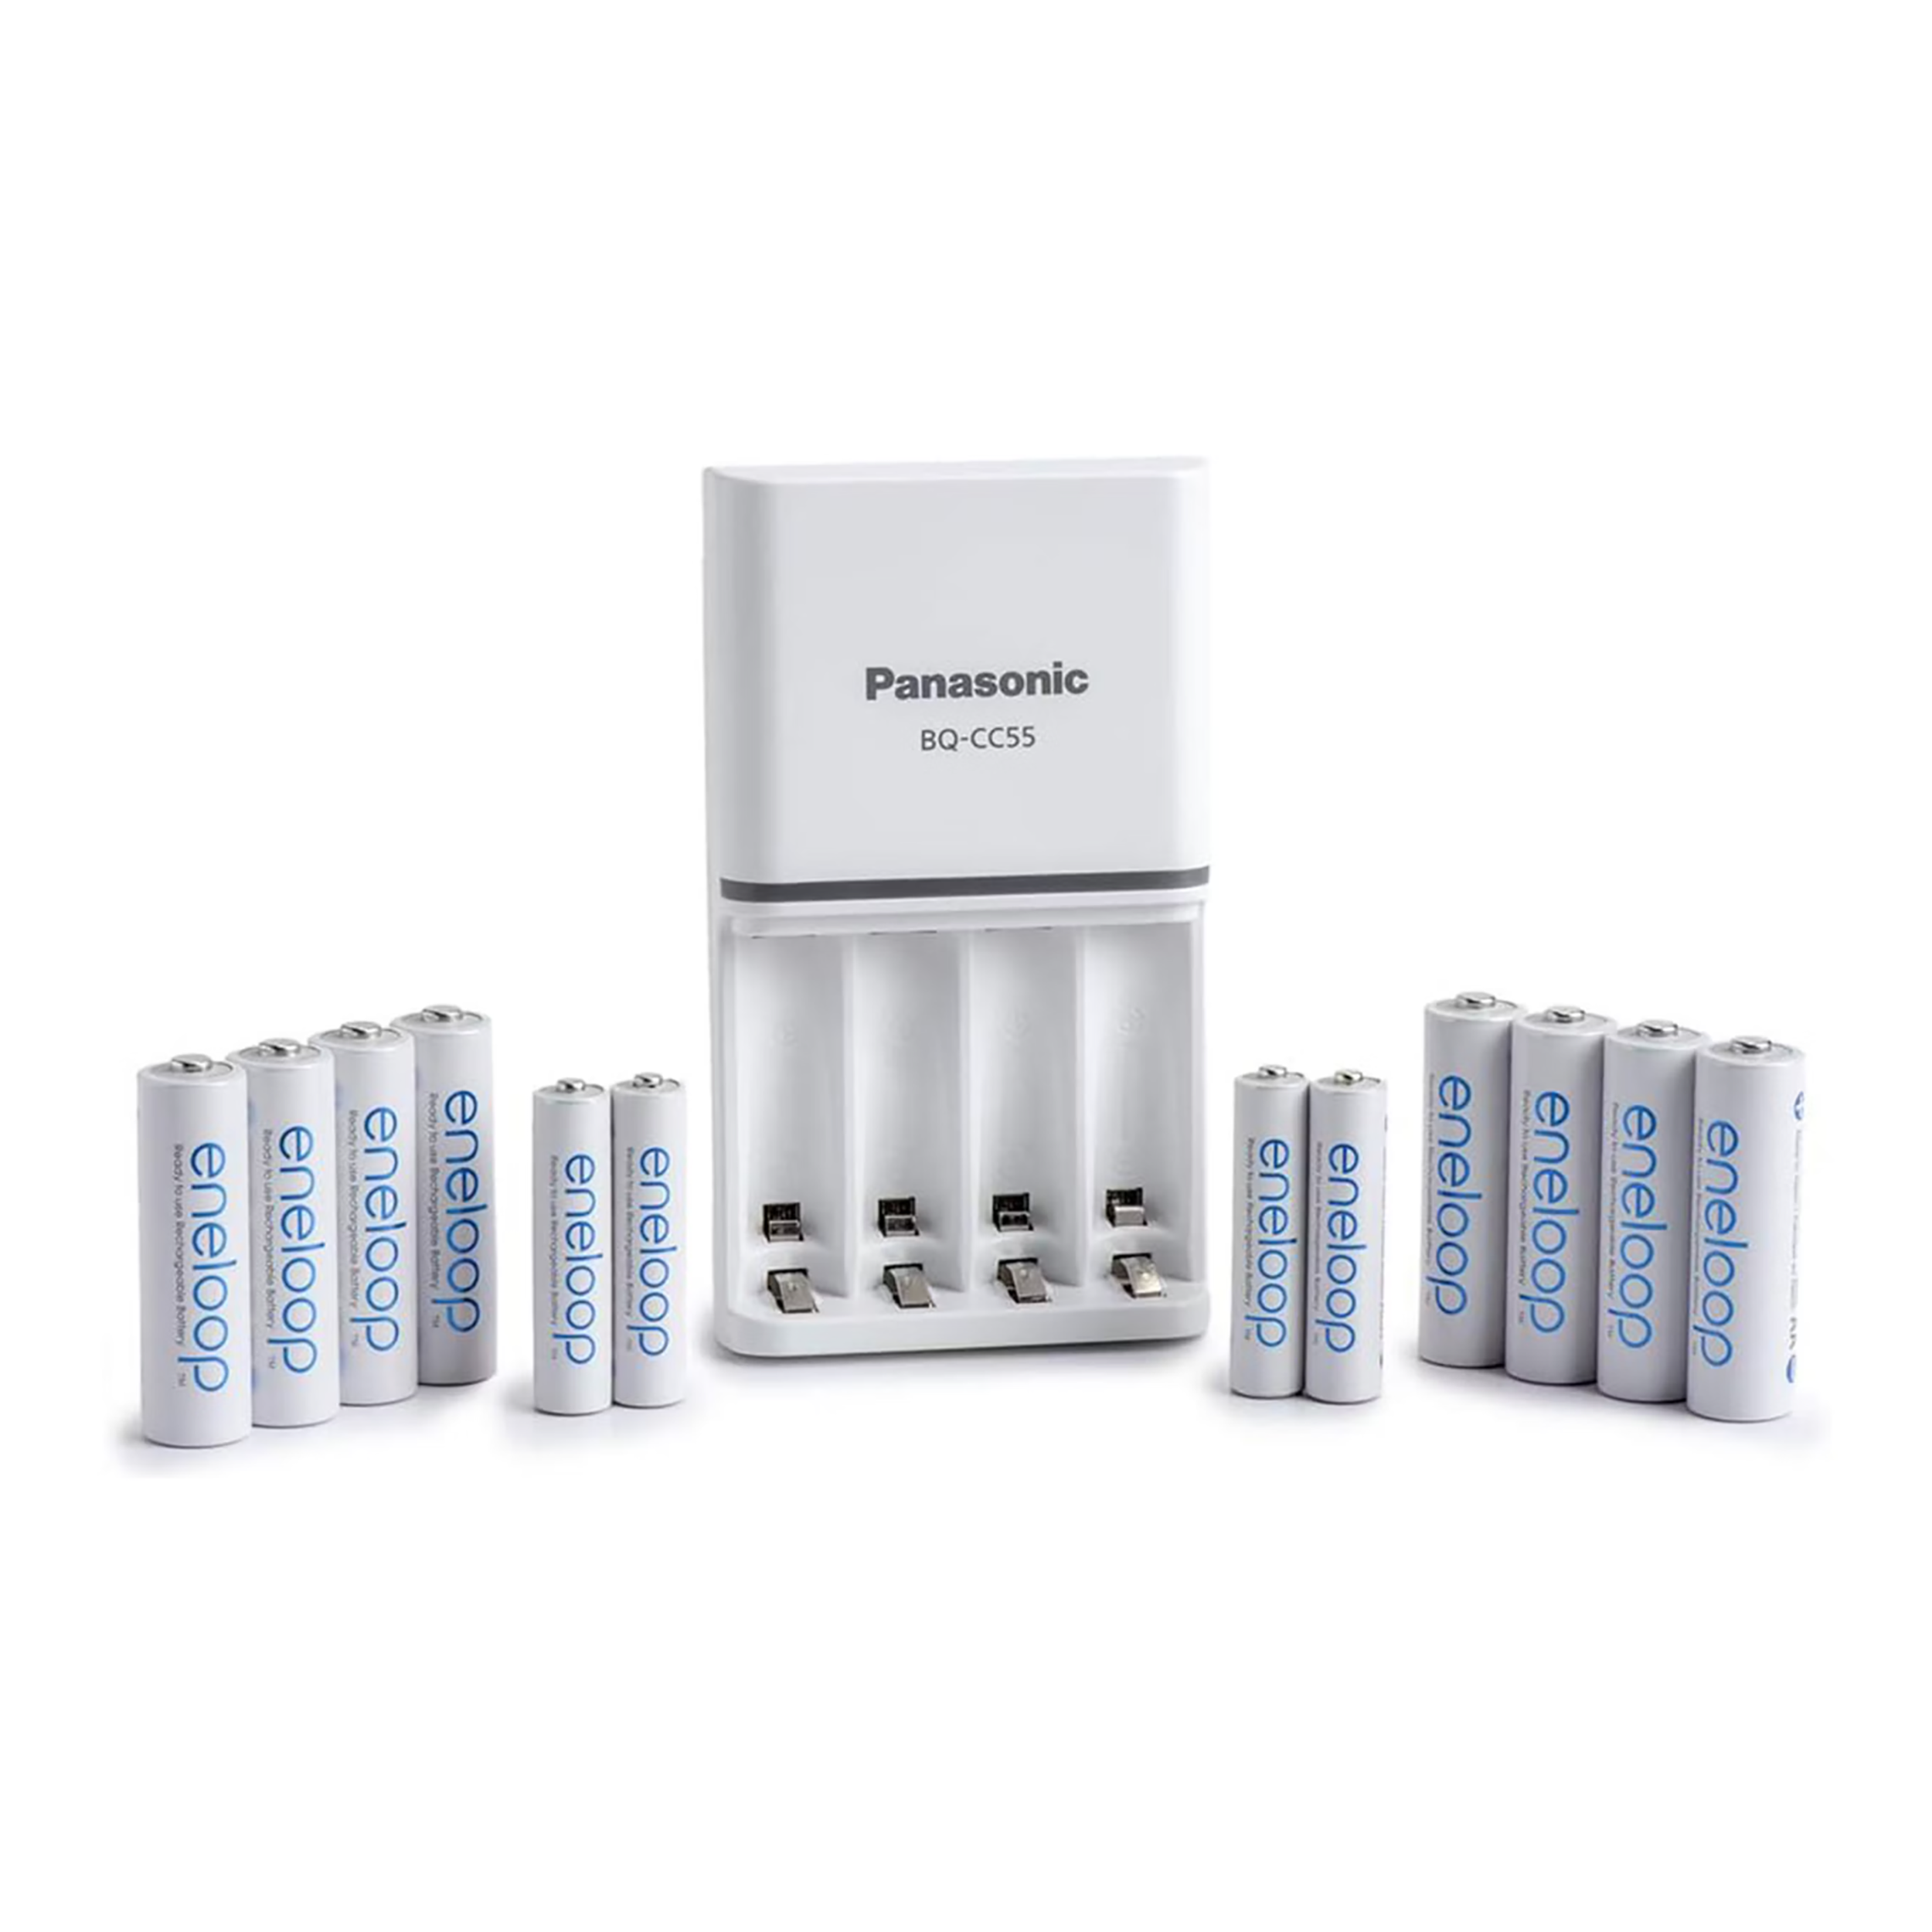 Panasonic Eneloop Power Pack